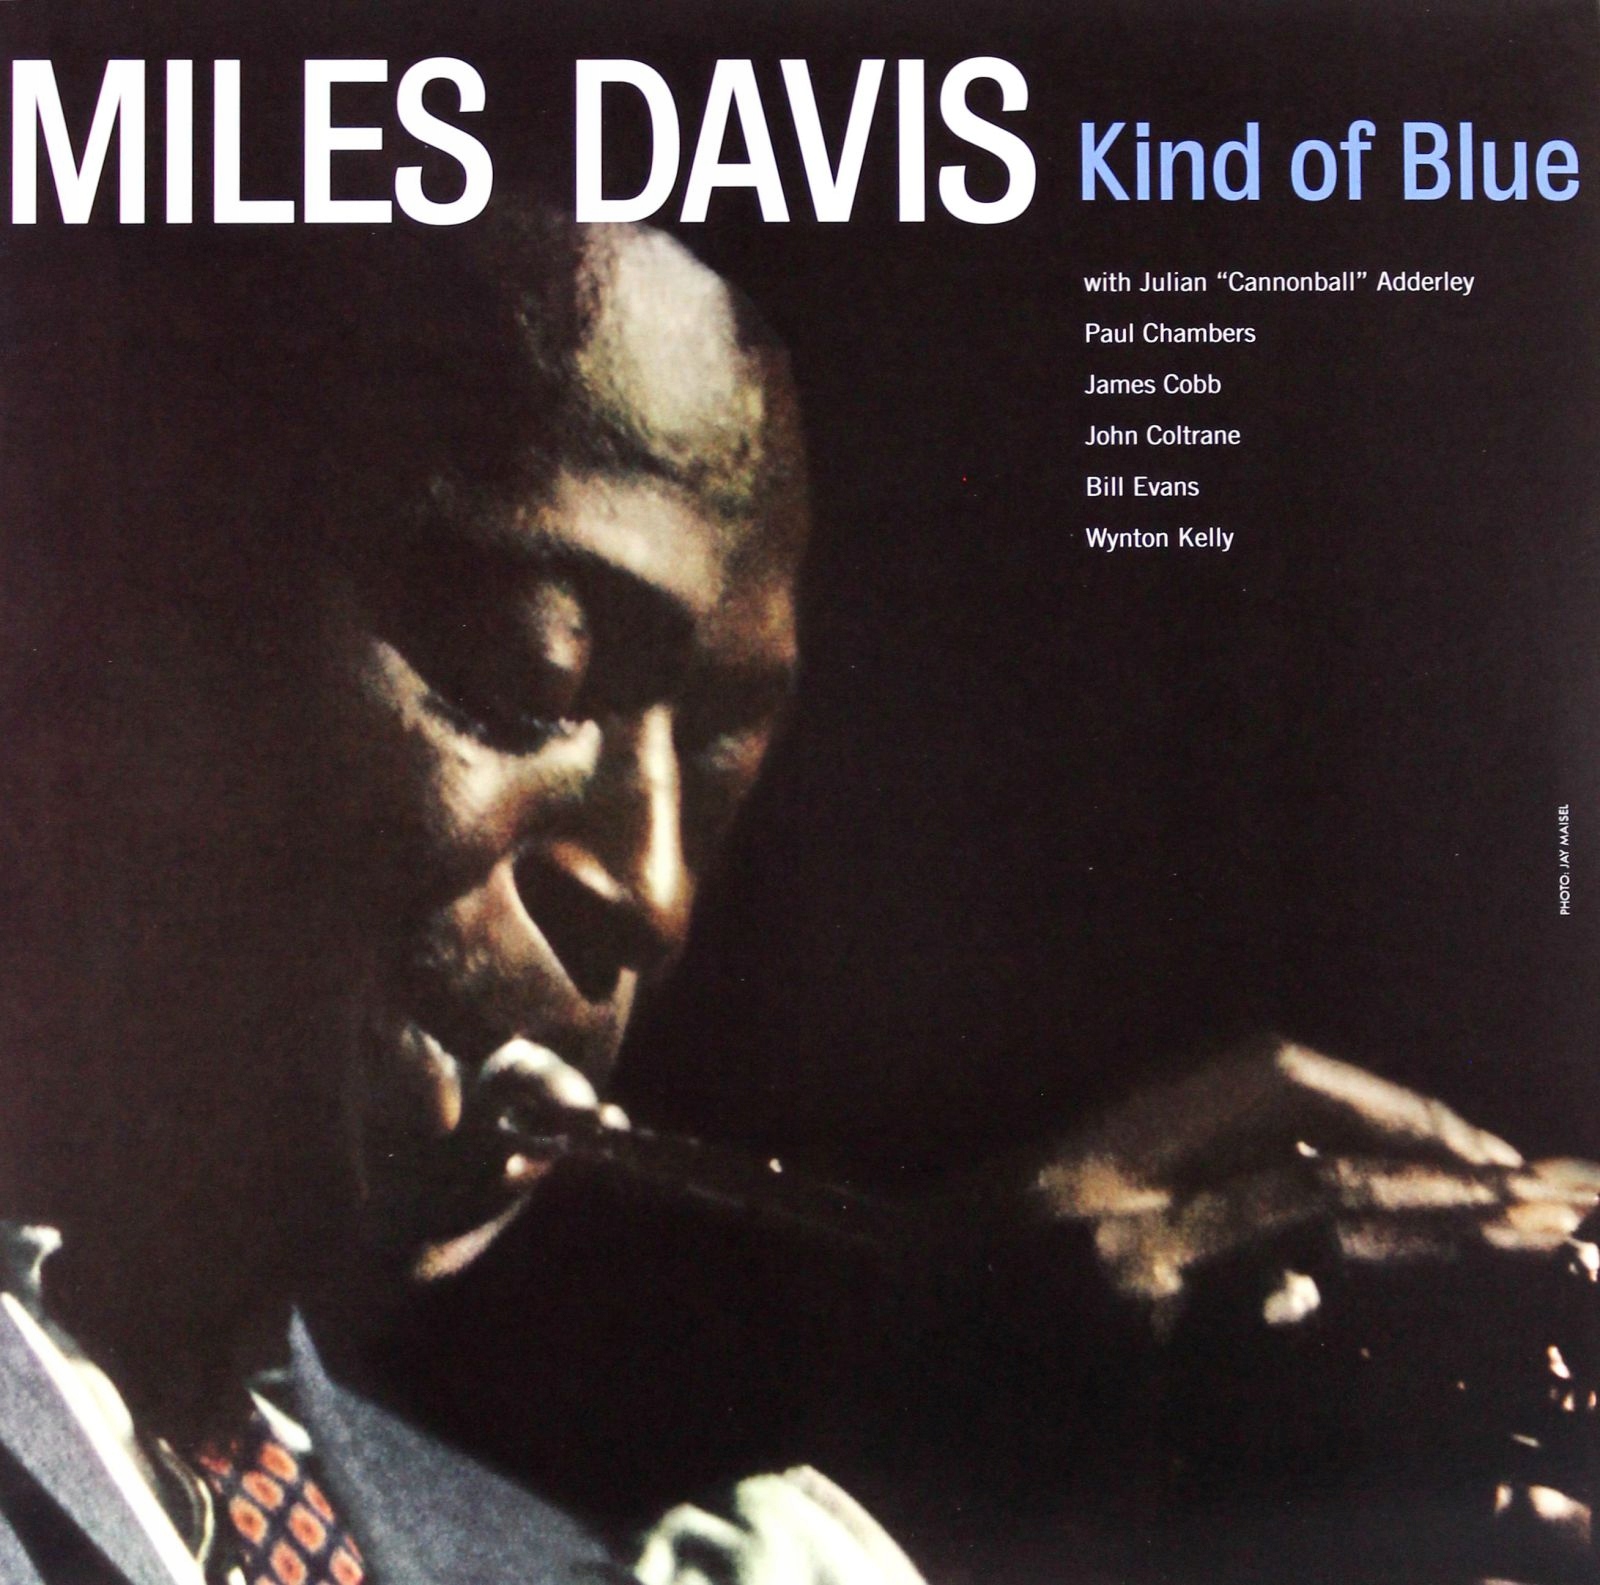 Blue miles. Майлз Девис альбом kind of Blue. Kind of Blue Майлз Дэвис джазовые альбомы. Виниловые пластинки с Miles Davis. Голубая пластинка виниловая Майлз Дэвис.